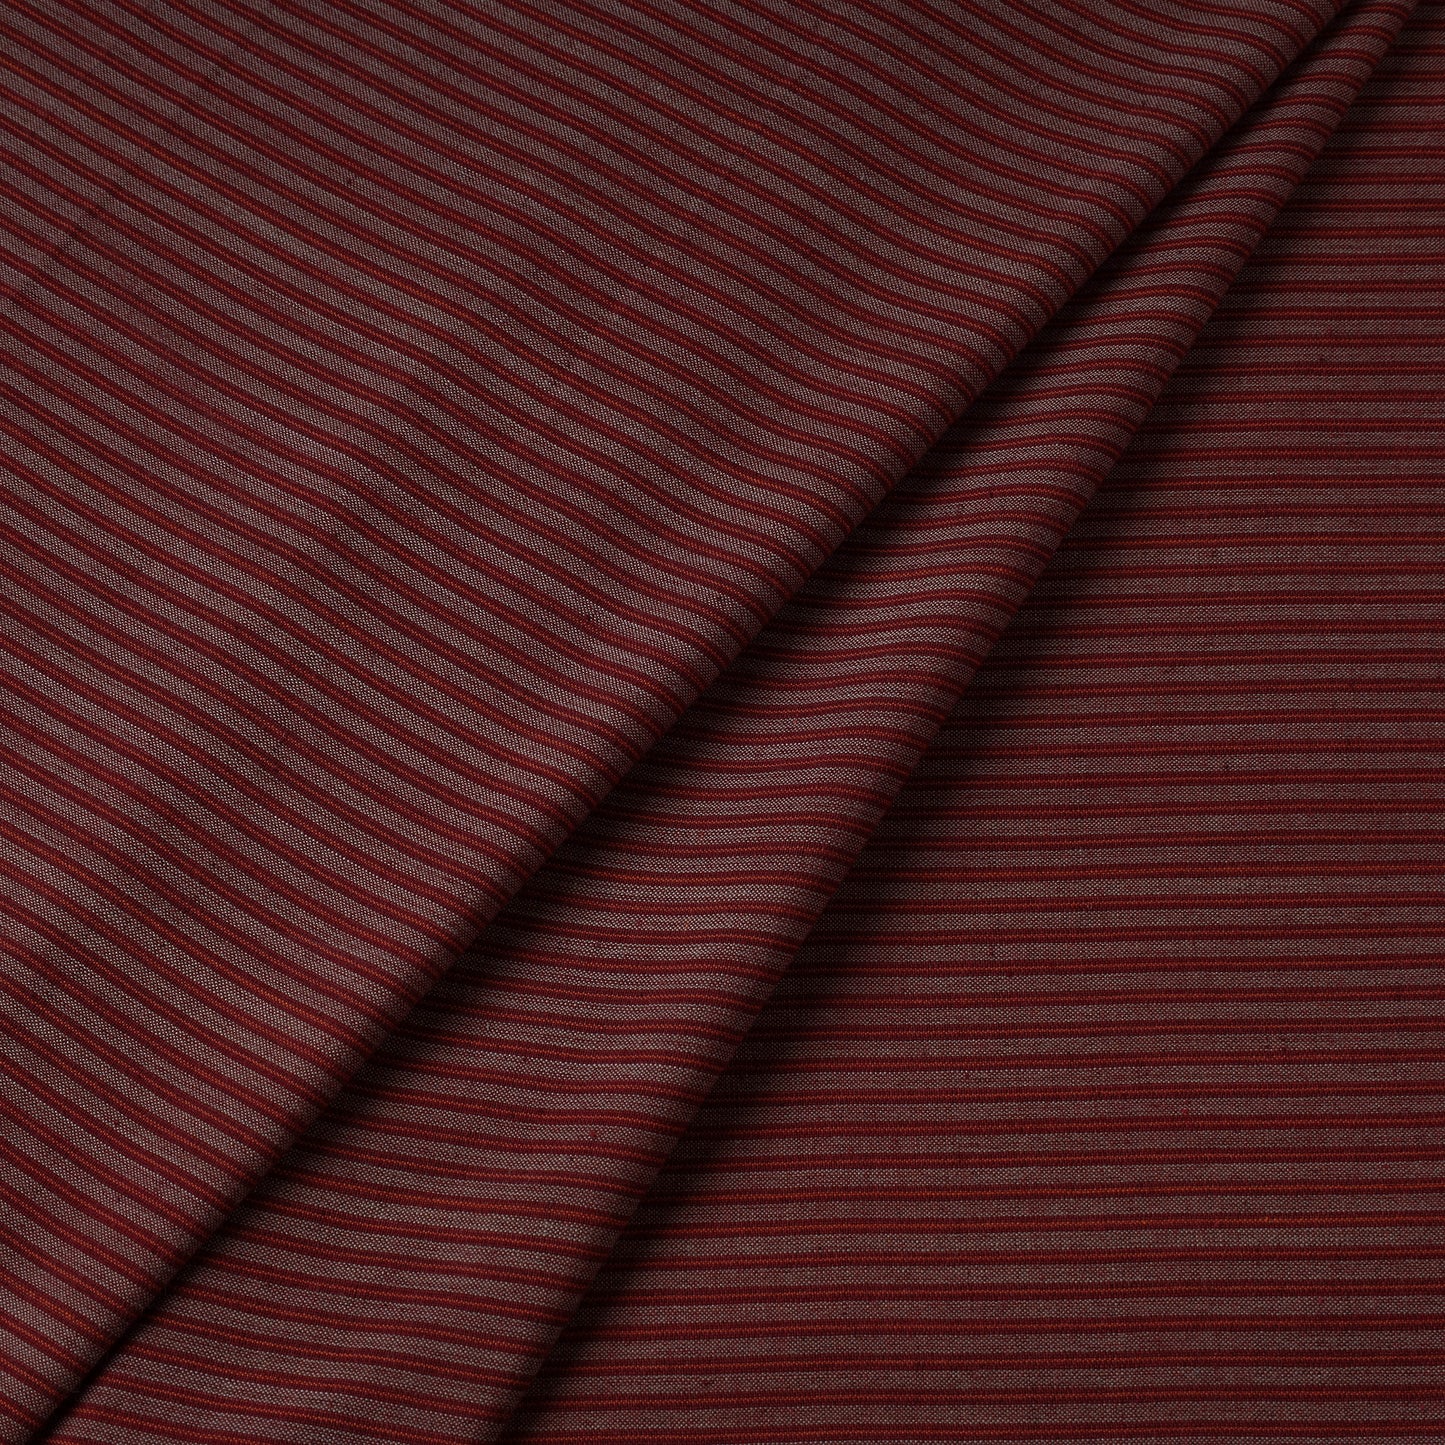 Maroon - Jhiri Pure Handloom Cotton Fabric